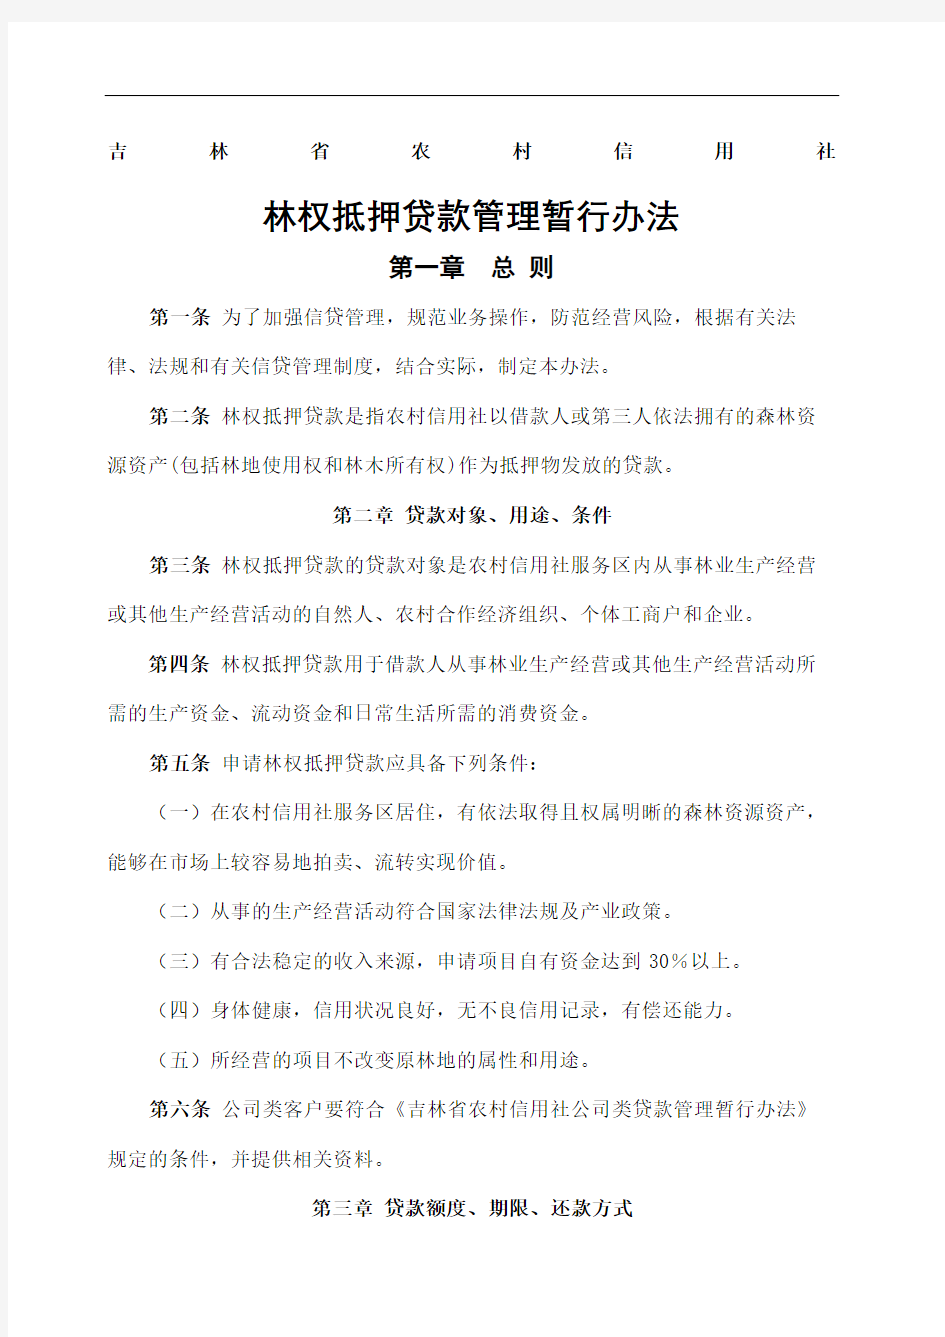 吉林省农村信用社林权抵押贷款管理暂行办法